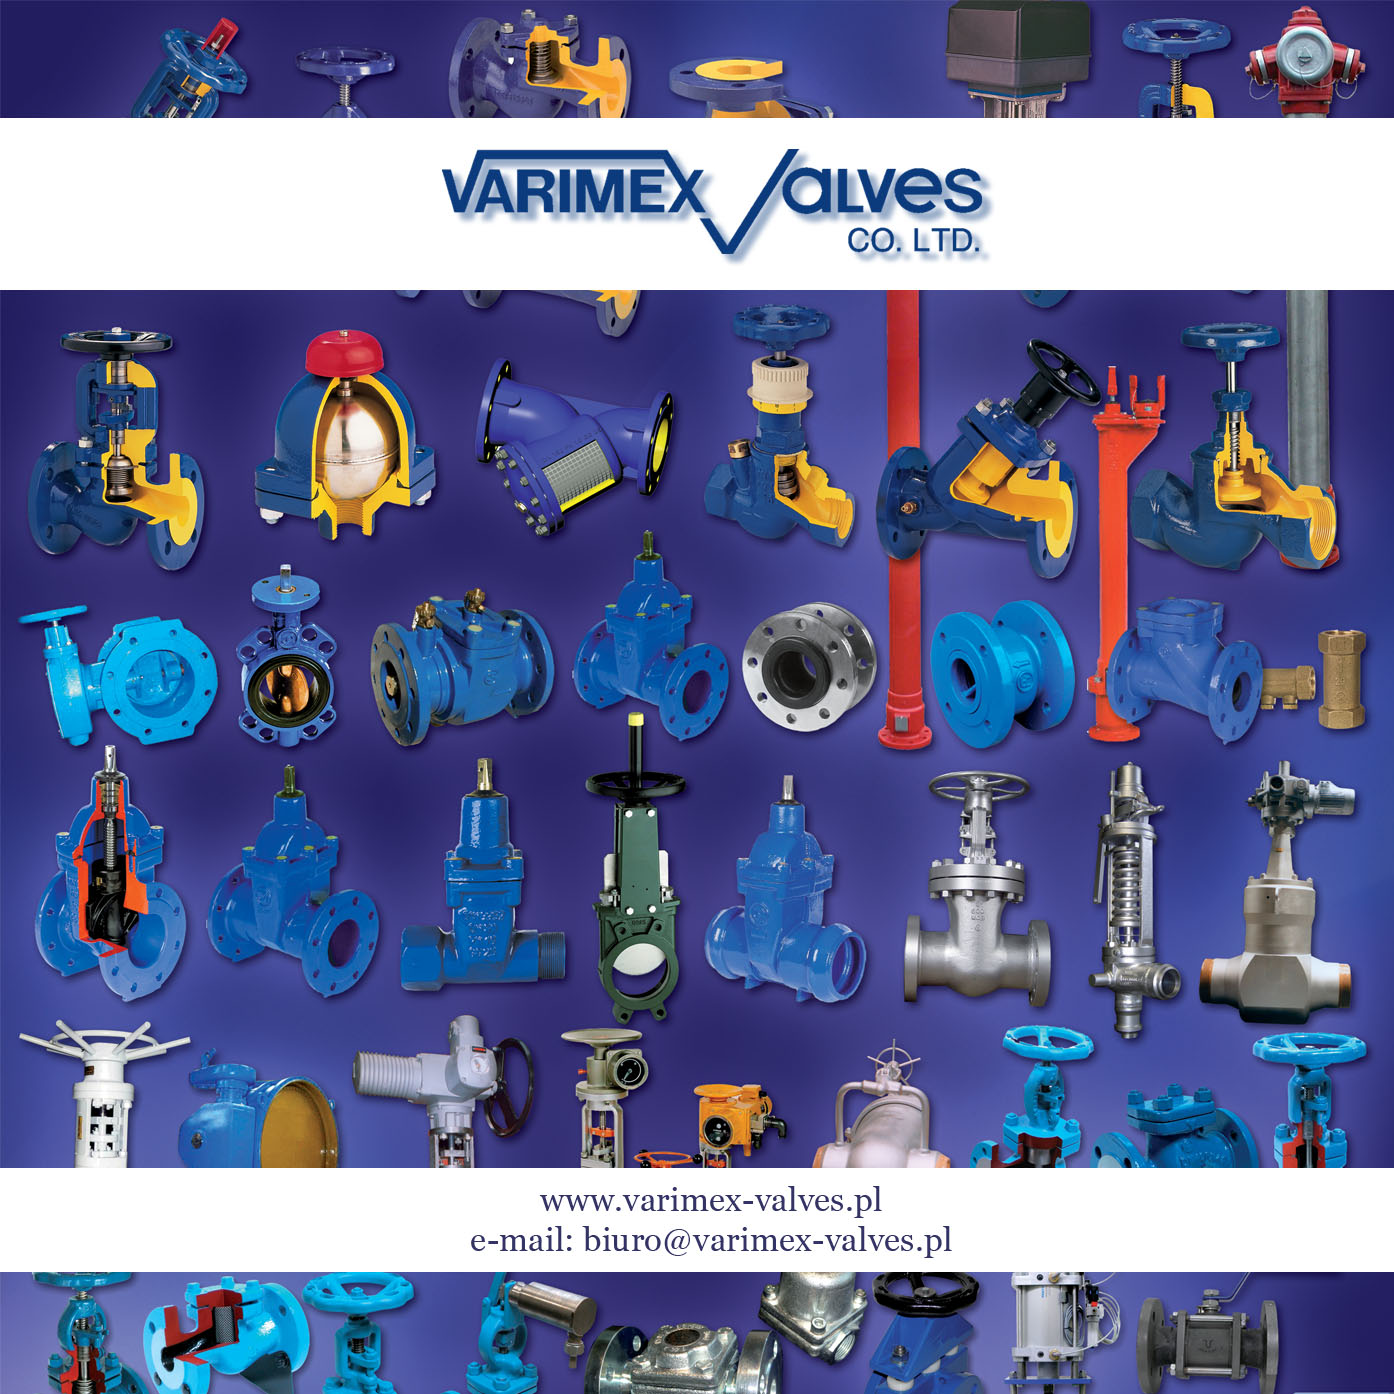 Varimex-Valves Sp z oo Handel zagraniczny Siłowniki i armatura Weterynaria,siłowniki pneumatyczne
